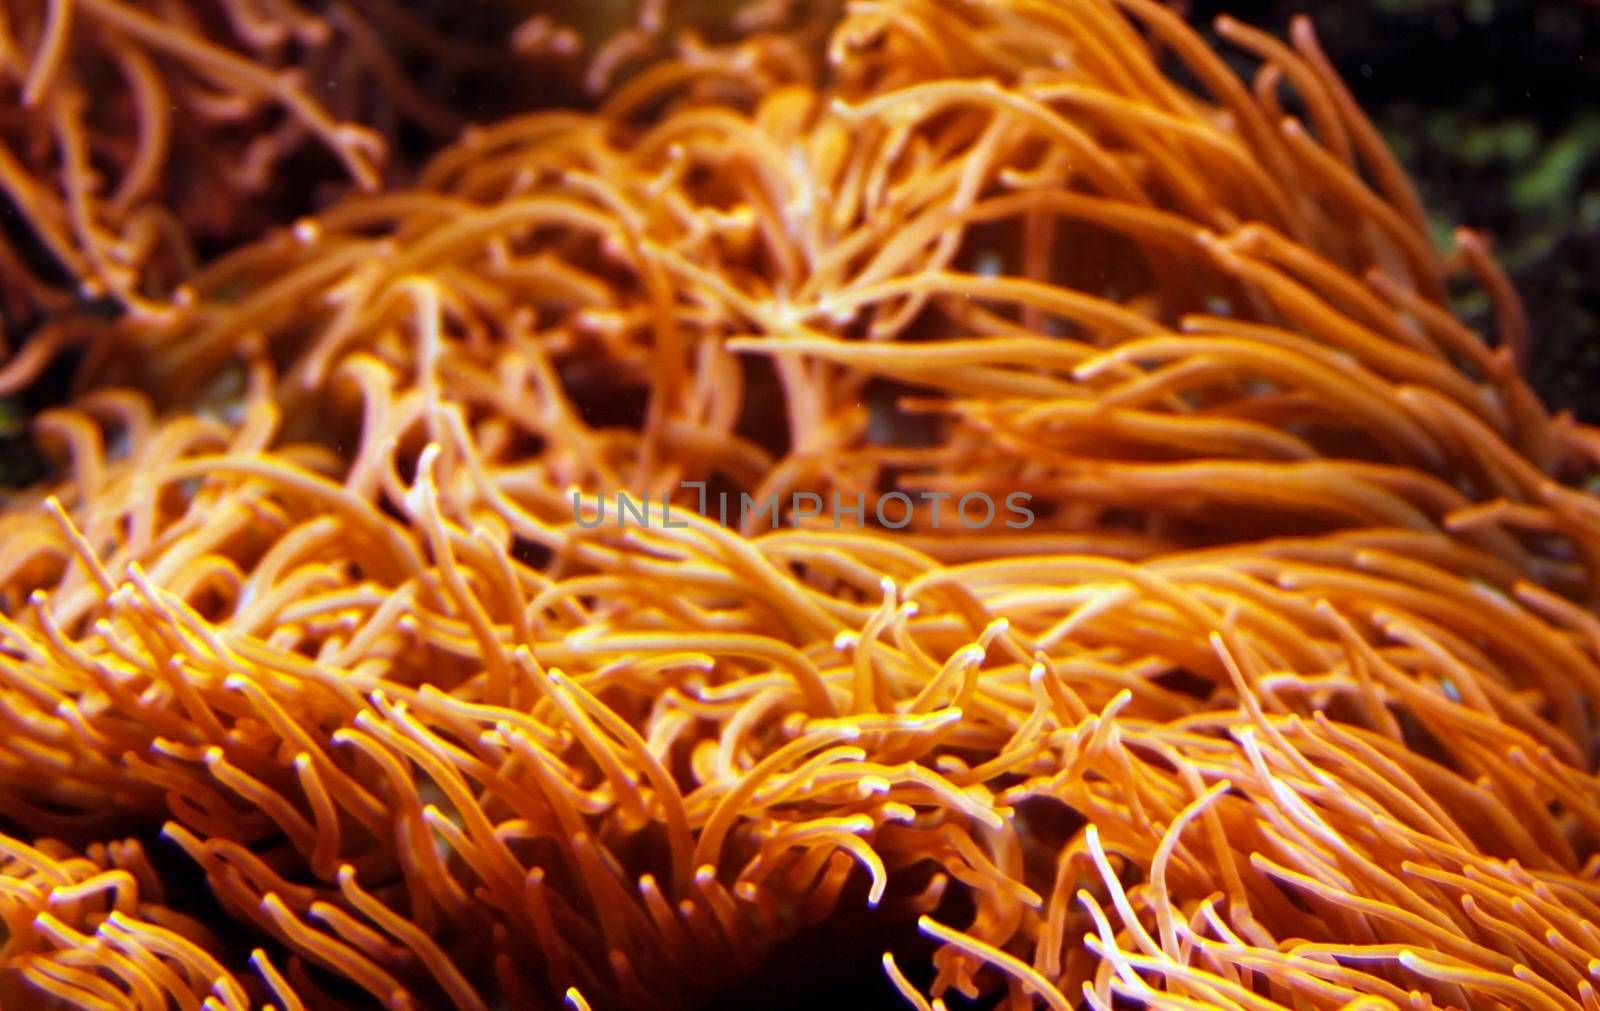 Orange sea anemone tentacles in a tropical aquarium